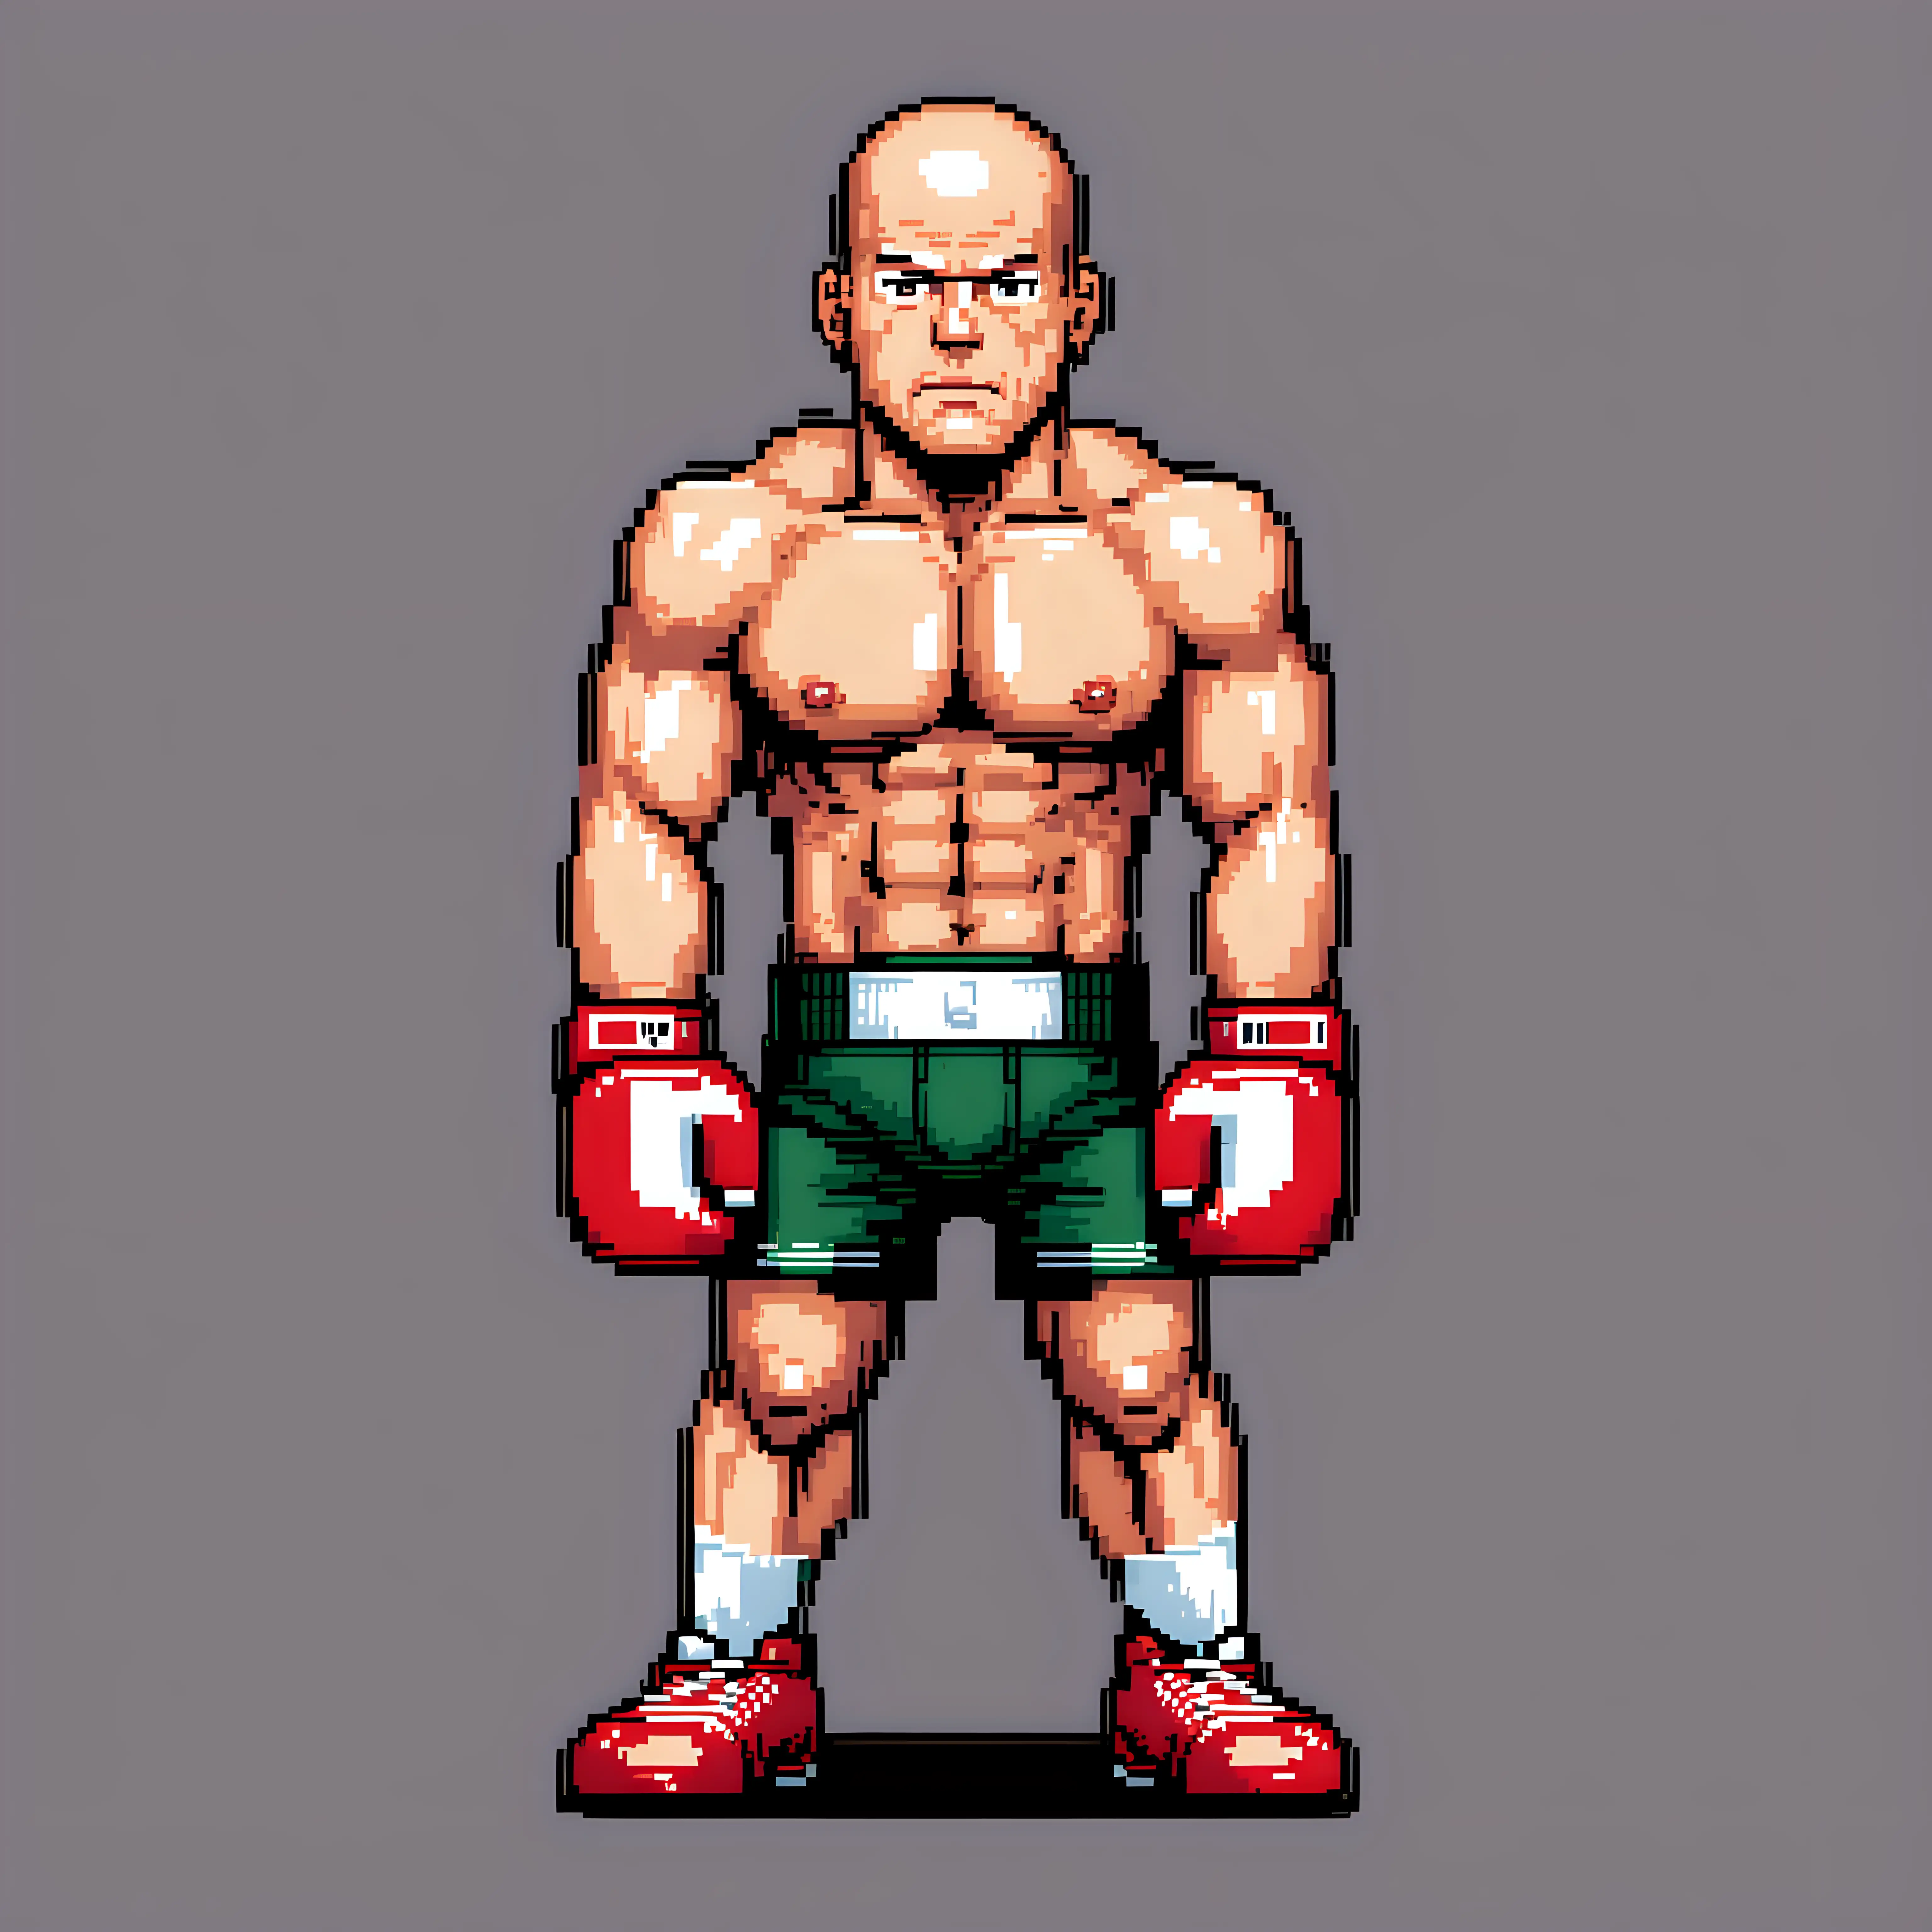 Pixel Art Bruce Willis Lookalike Boxer Punching